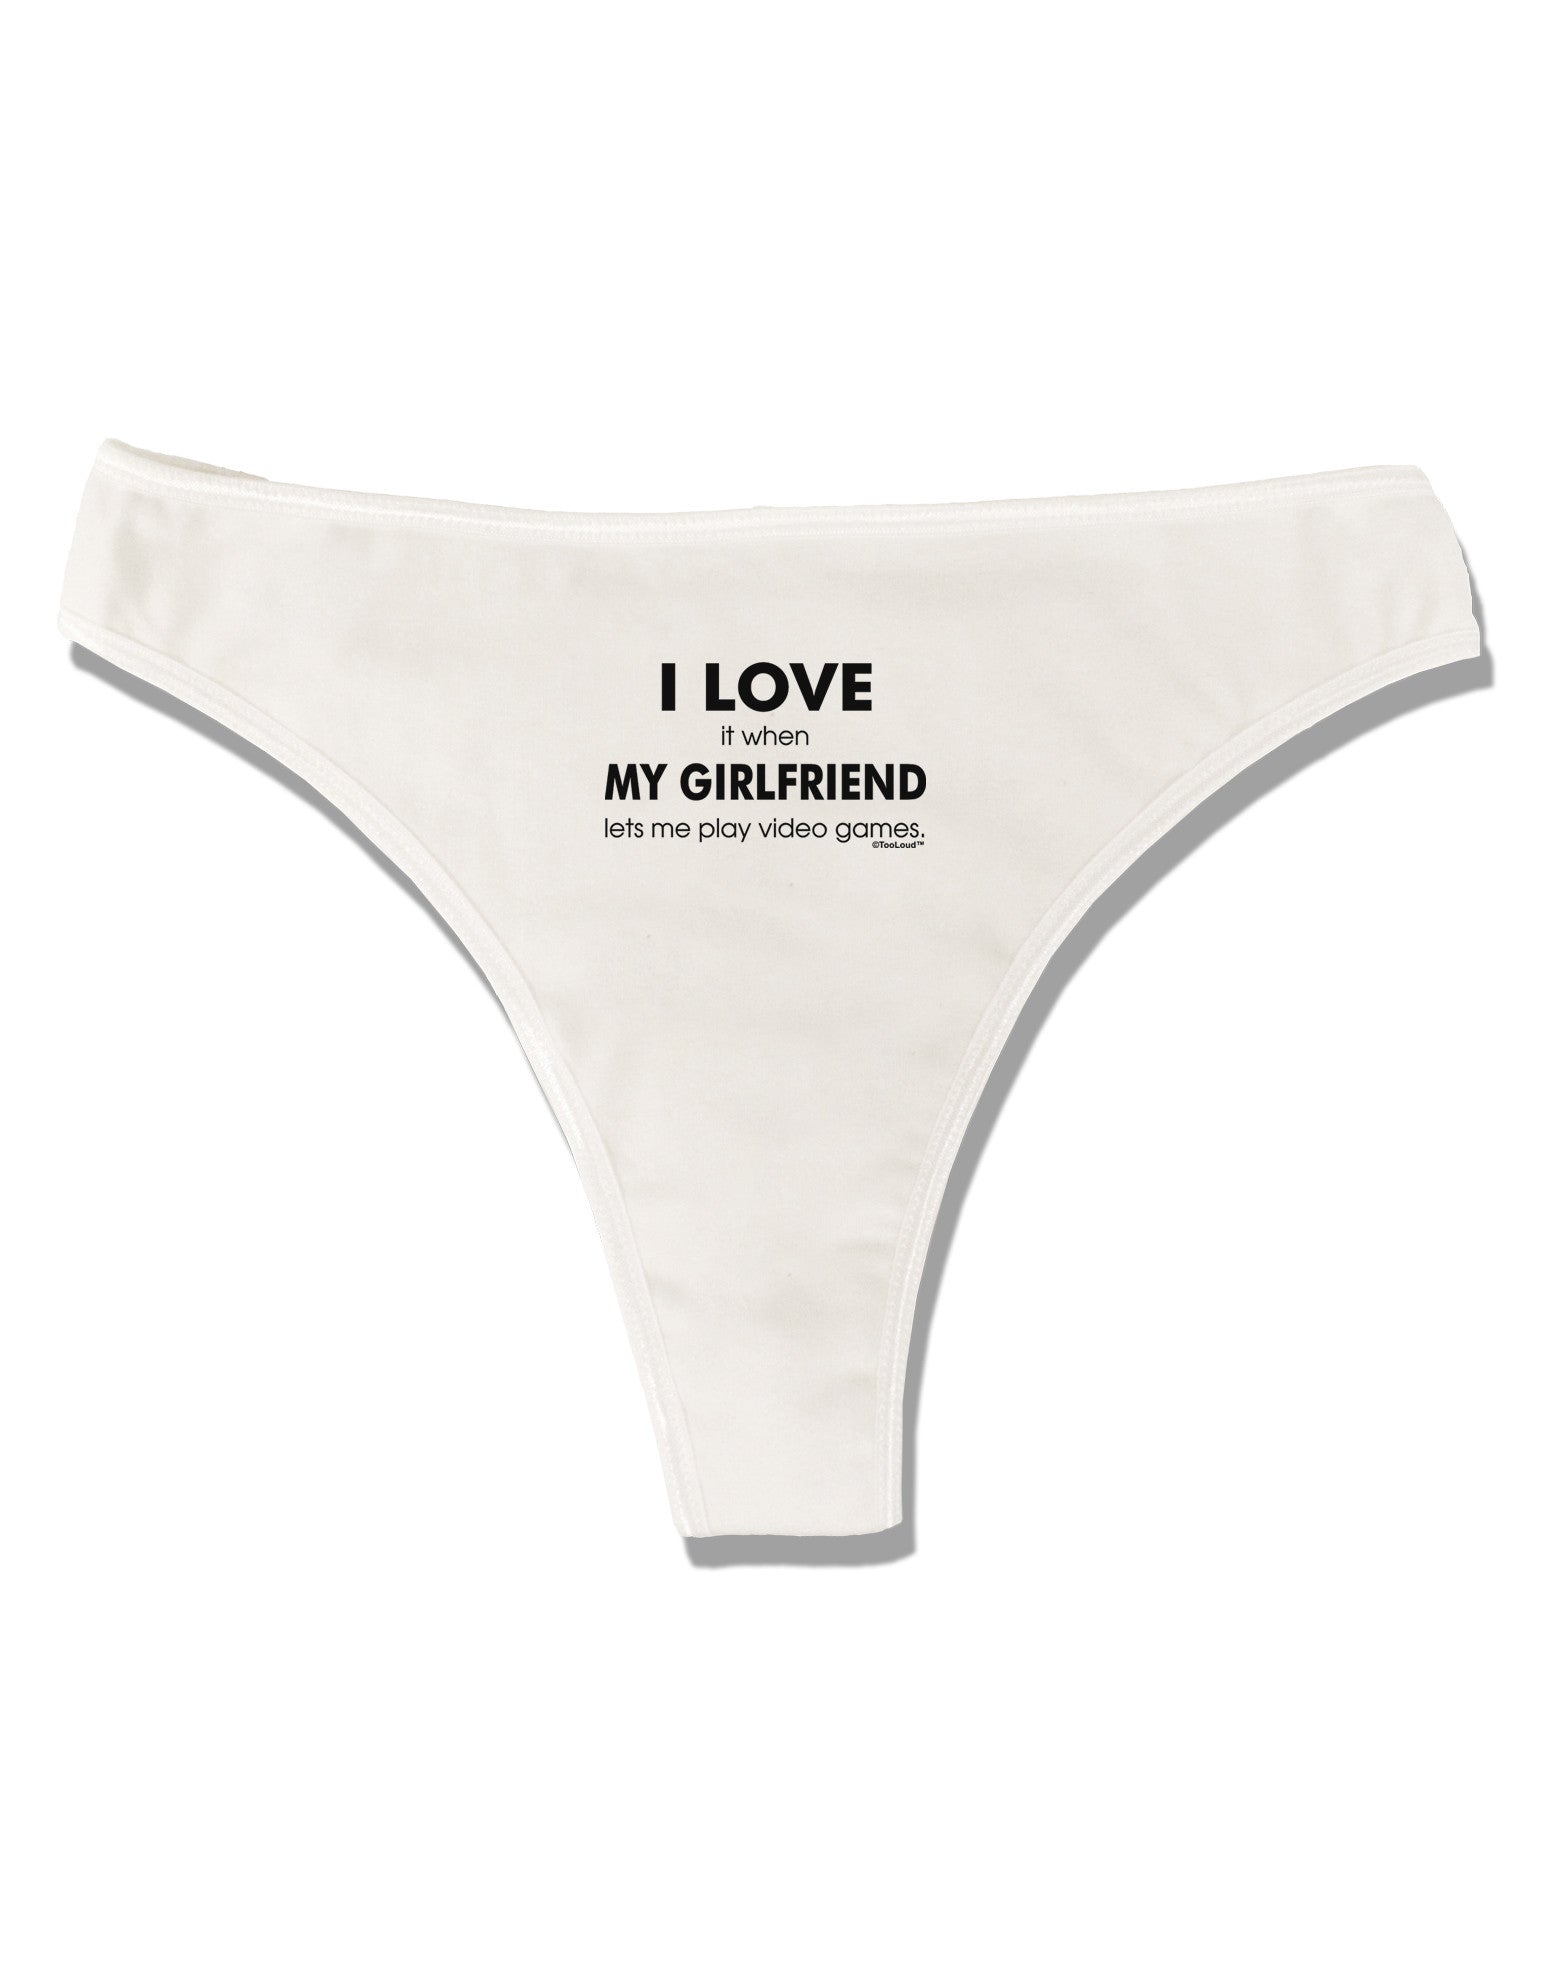 I-love-my-girlfriend underwear Gifts, Unique Designs